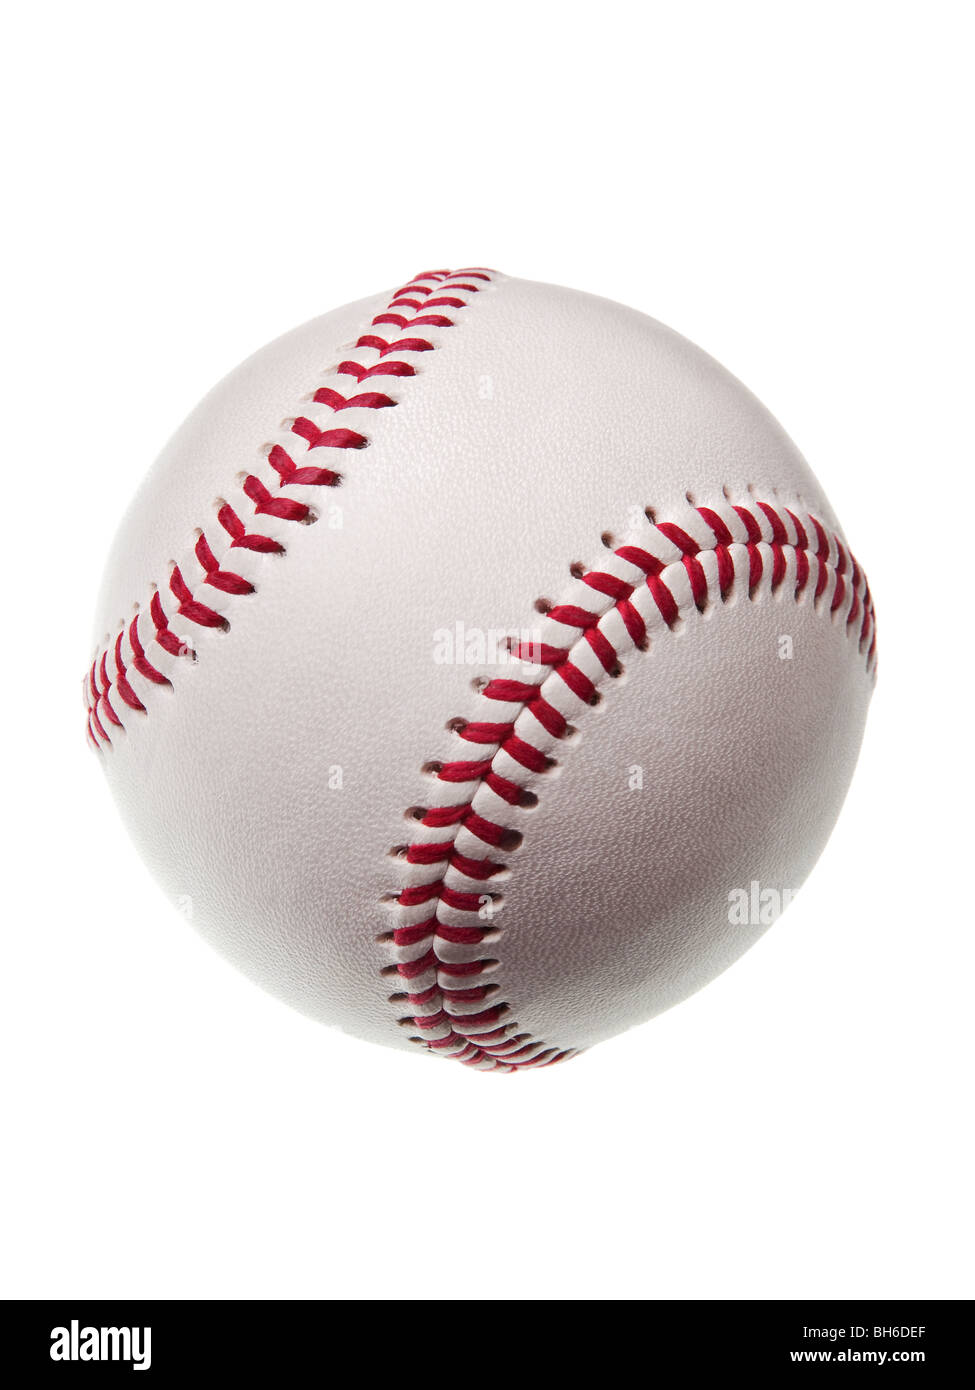 new baseball isolated on white background Stock Photo